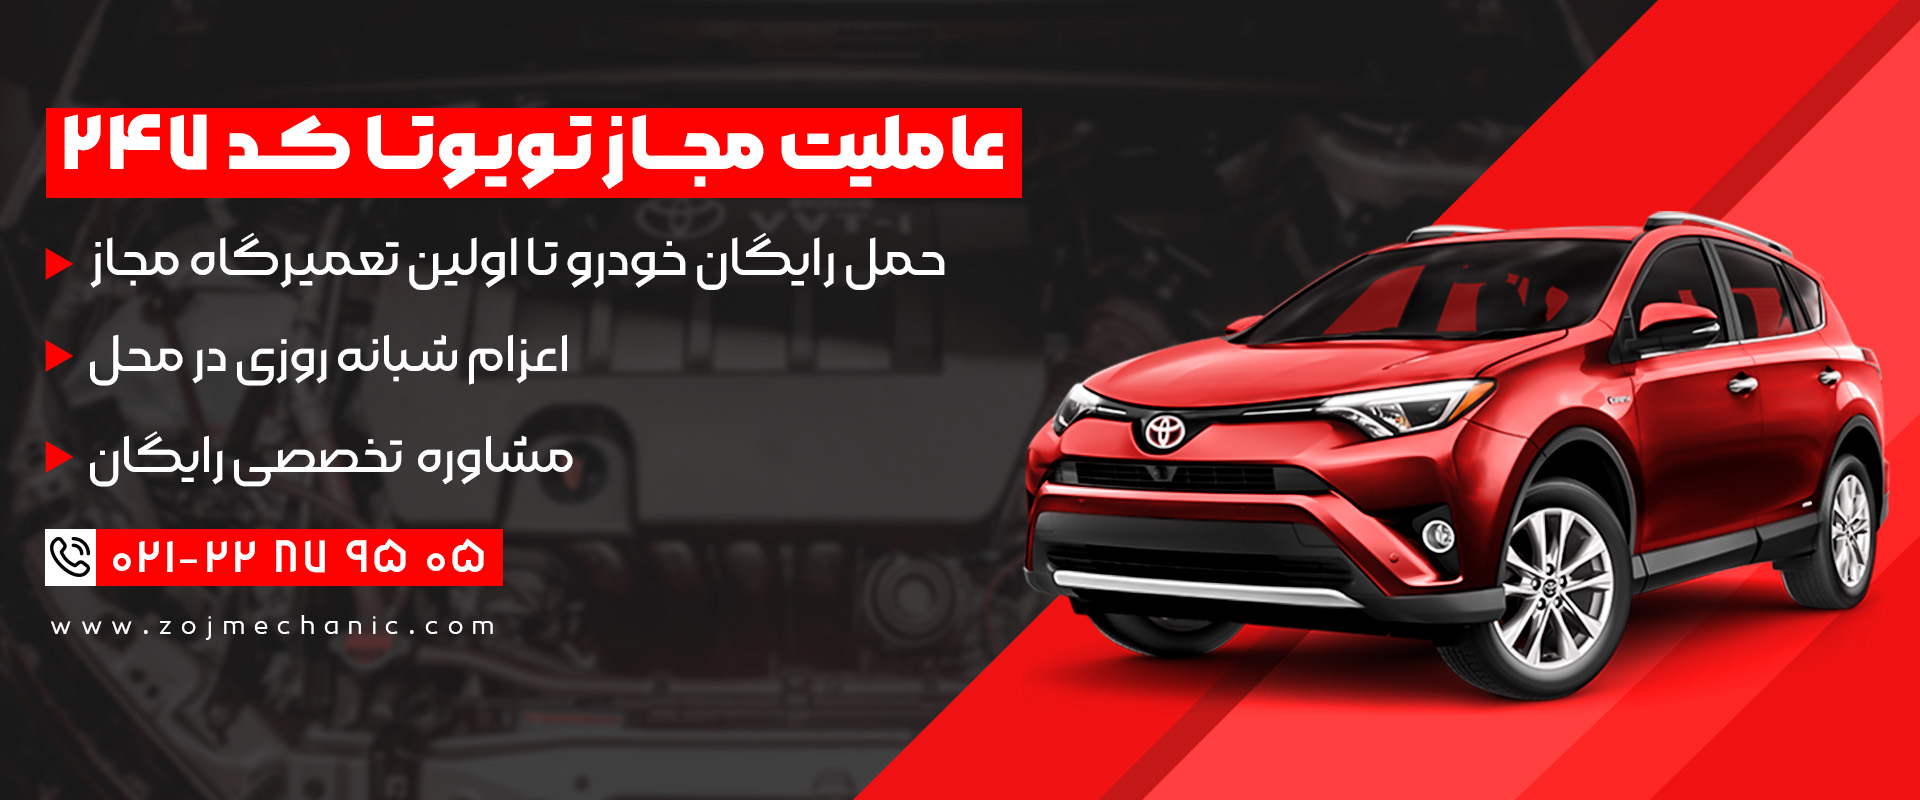 نمایندگی و عاملیت مجاز تویوتا (Toyota) در شهر تهران + خدمات ویژه